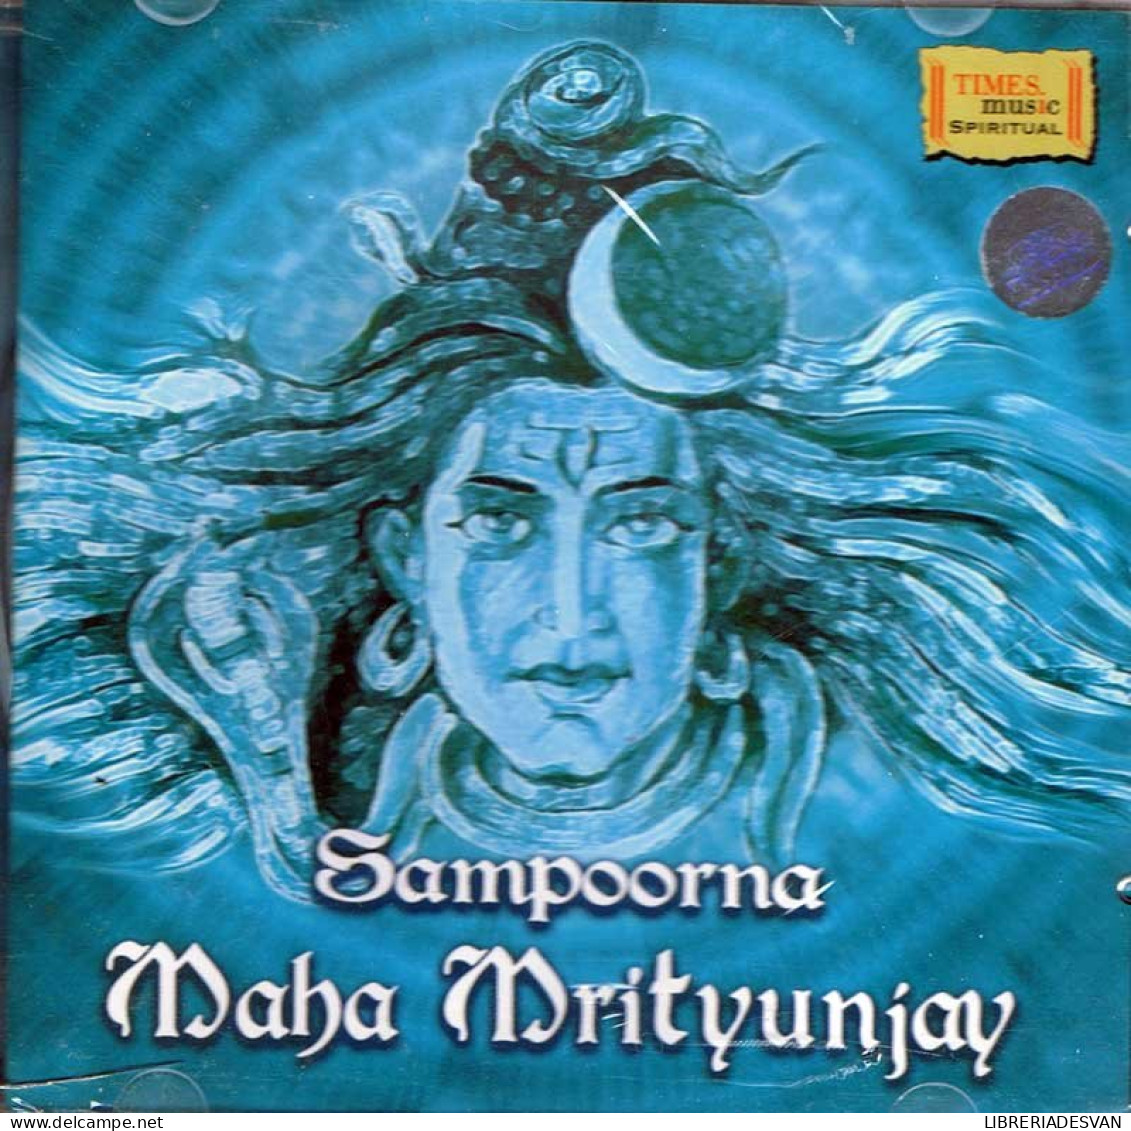 Sampoorna. Maha Mrityunjay. CD - New Age